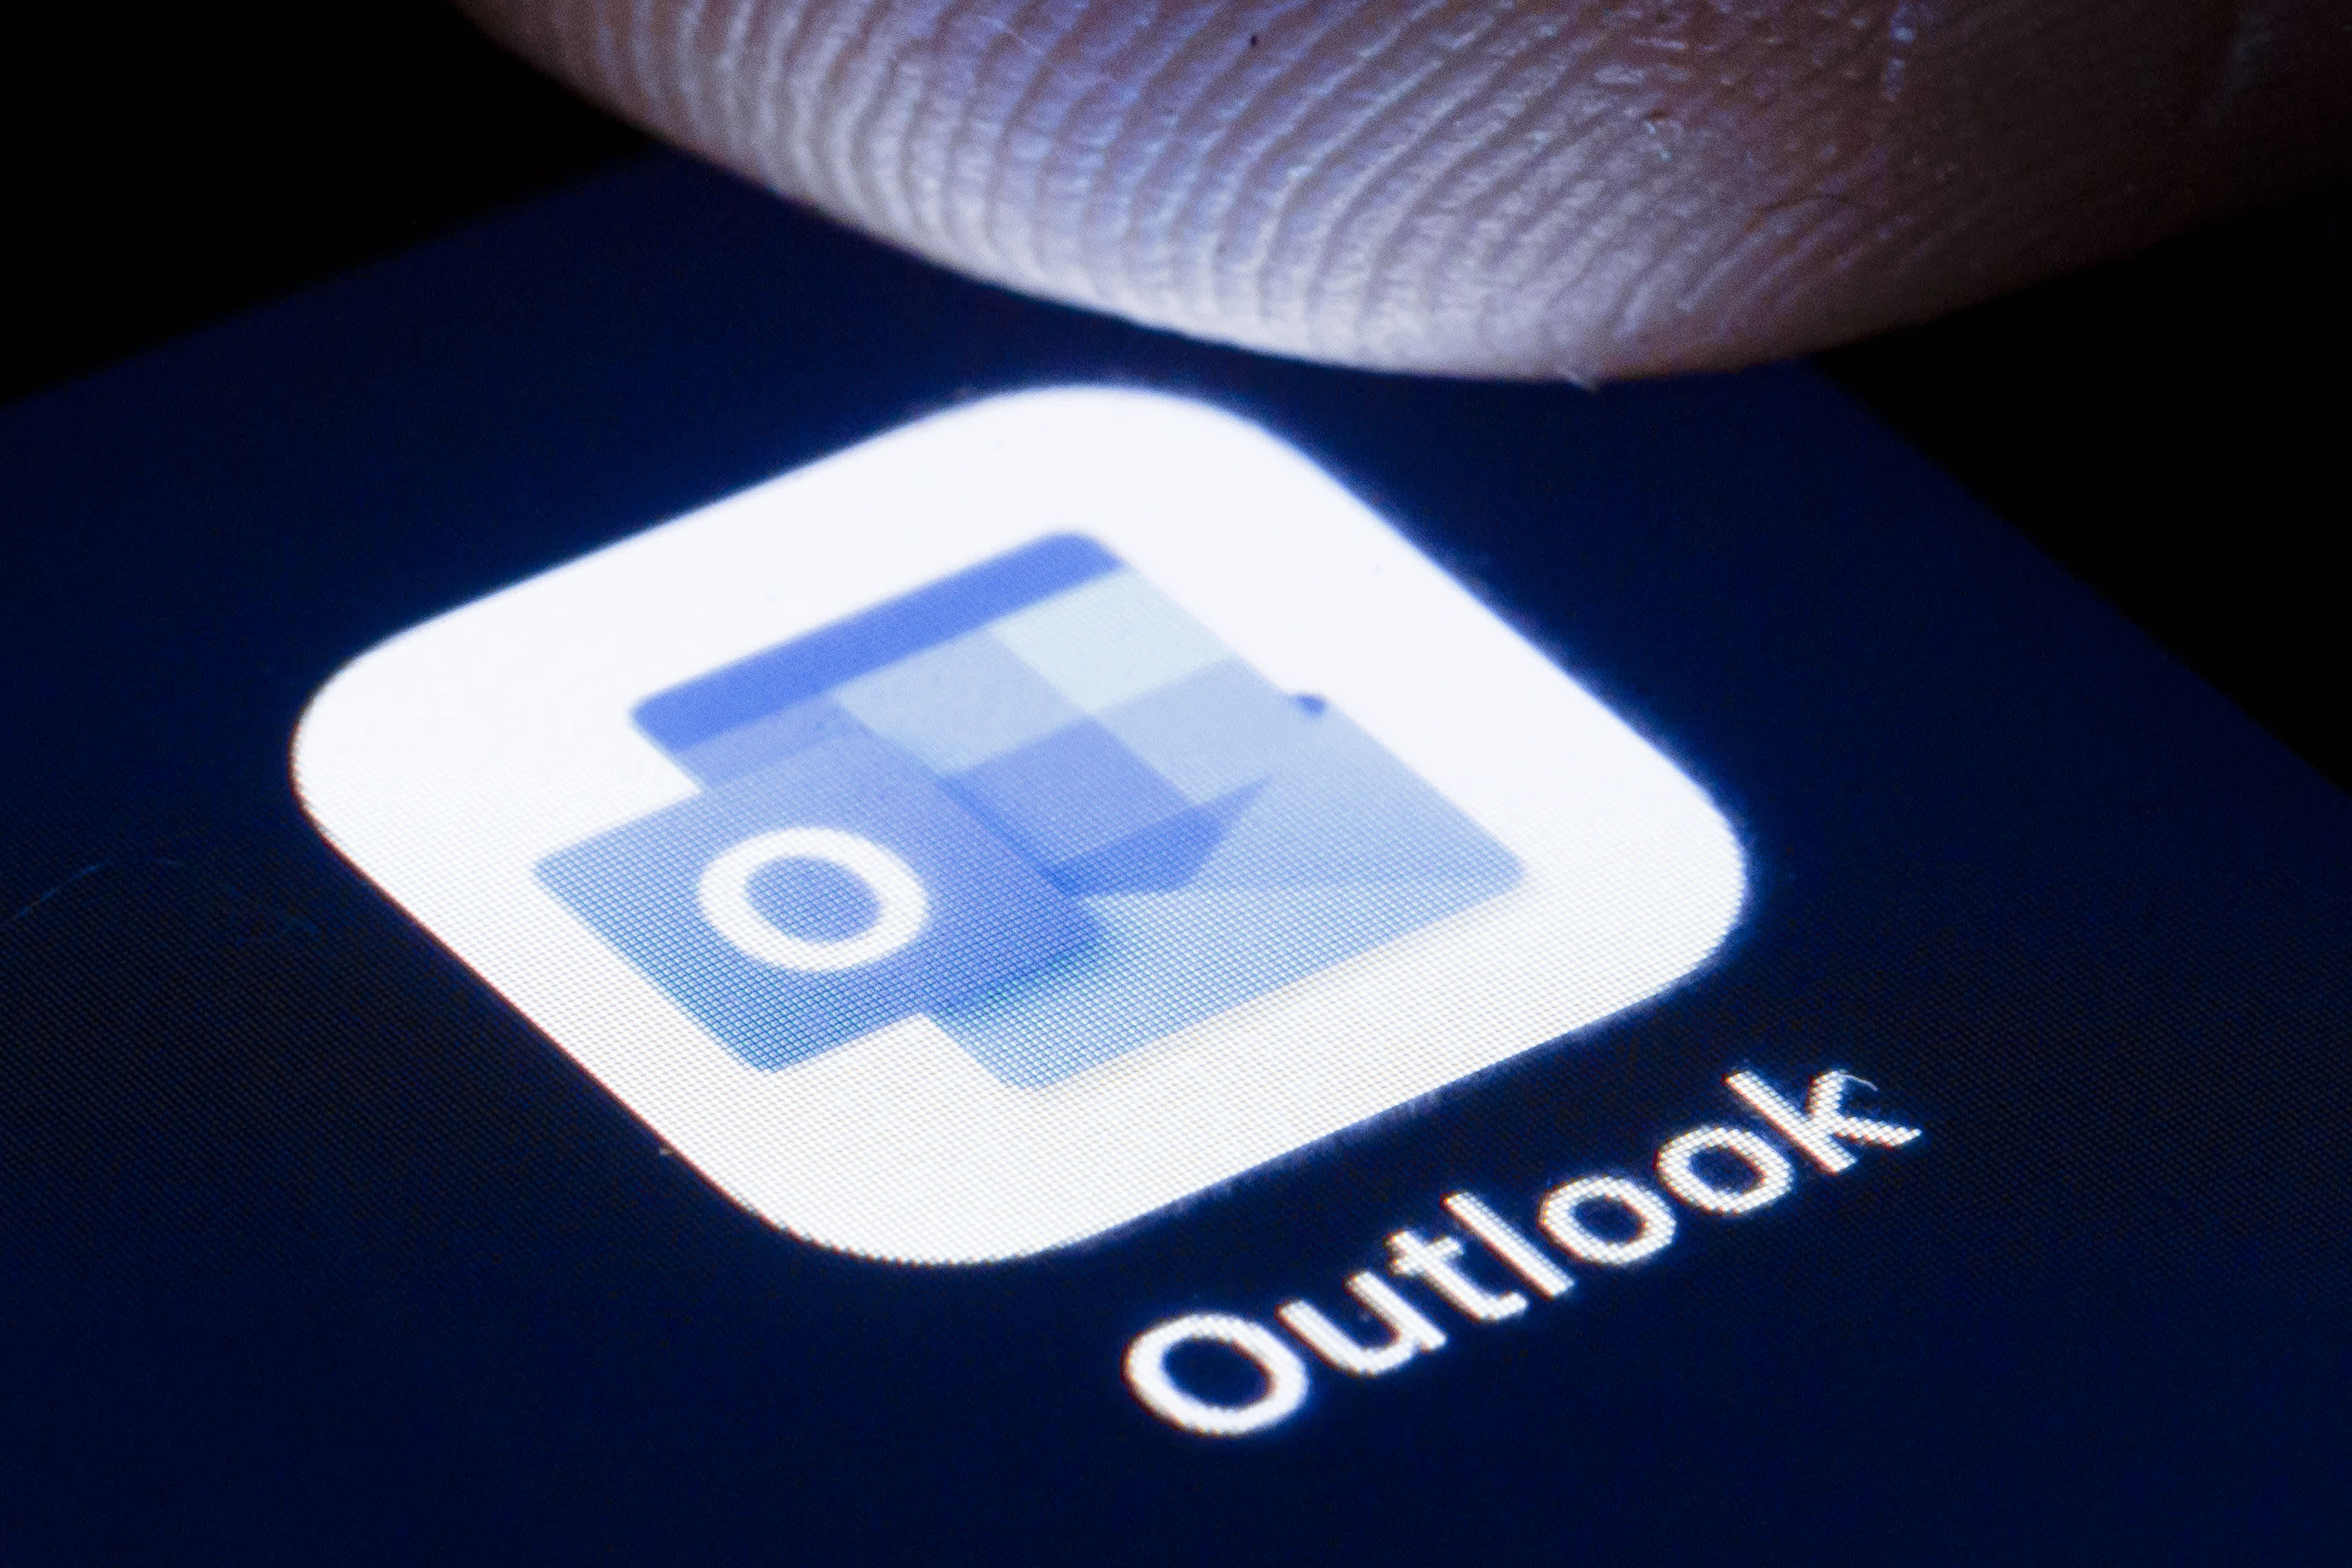 تقول Microsoft إن الاضطرابات التي حدثت في أوائل شهر يونيو في Outlook ، النظام الأساسي السحابي ، كانت هجمات إلكترونية